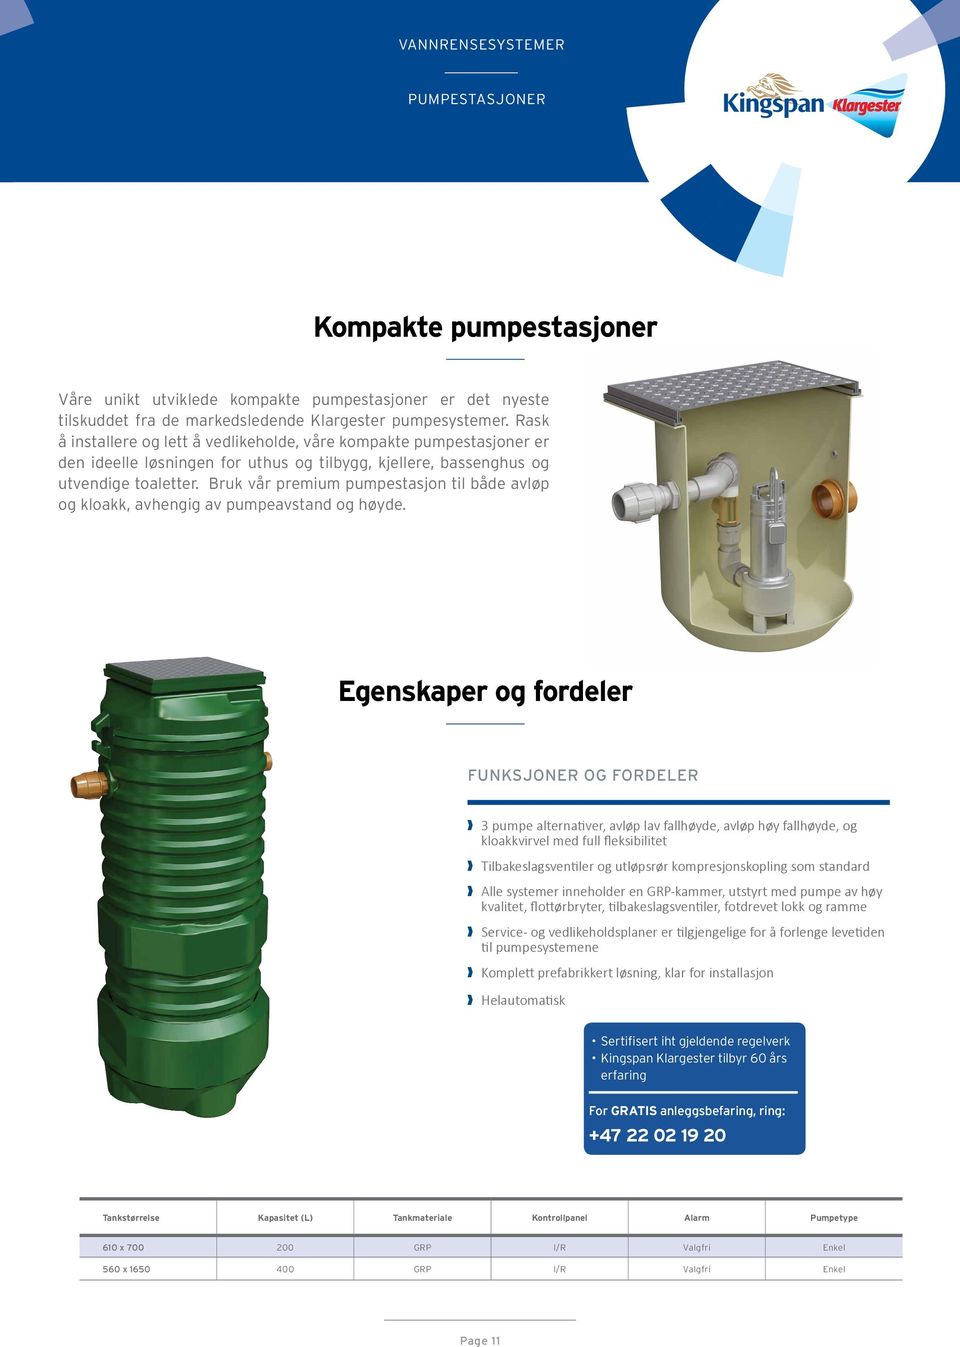 Bruk vår premium pumpestasjon til både avløp og kloakk, avhengig av pumpeavstand og høyde.